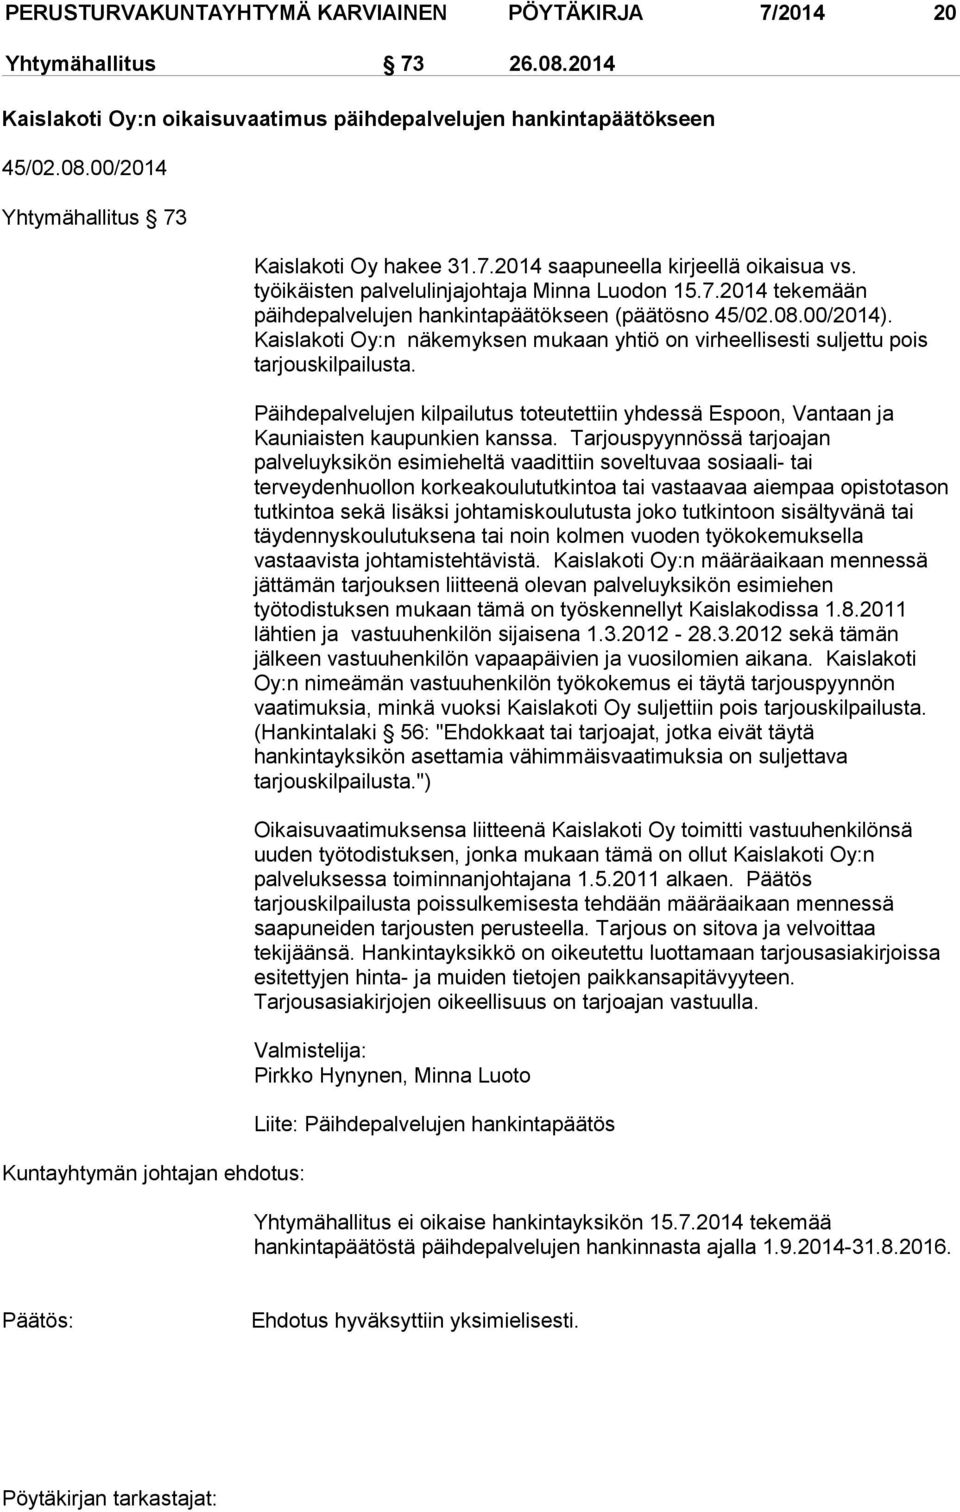 Kaislakoti Oy:n näkemyksen mukaan yhtiö on virheellisesti suljettu pois tarjouskilpailusta. Päihdepalvelujen kilpailutus toteutettiin yhdessä Espoon, Vantaan ja Kauniaisten kaupunkien kanssa.